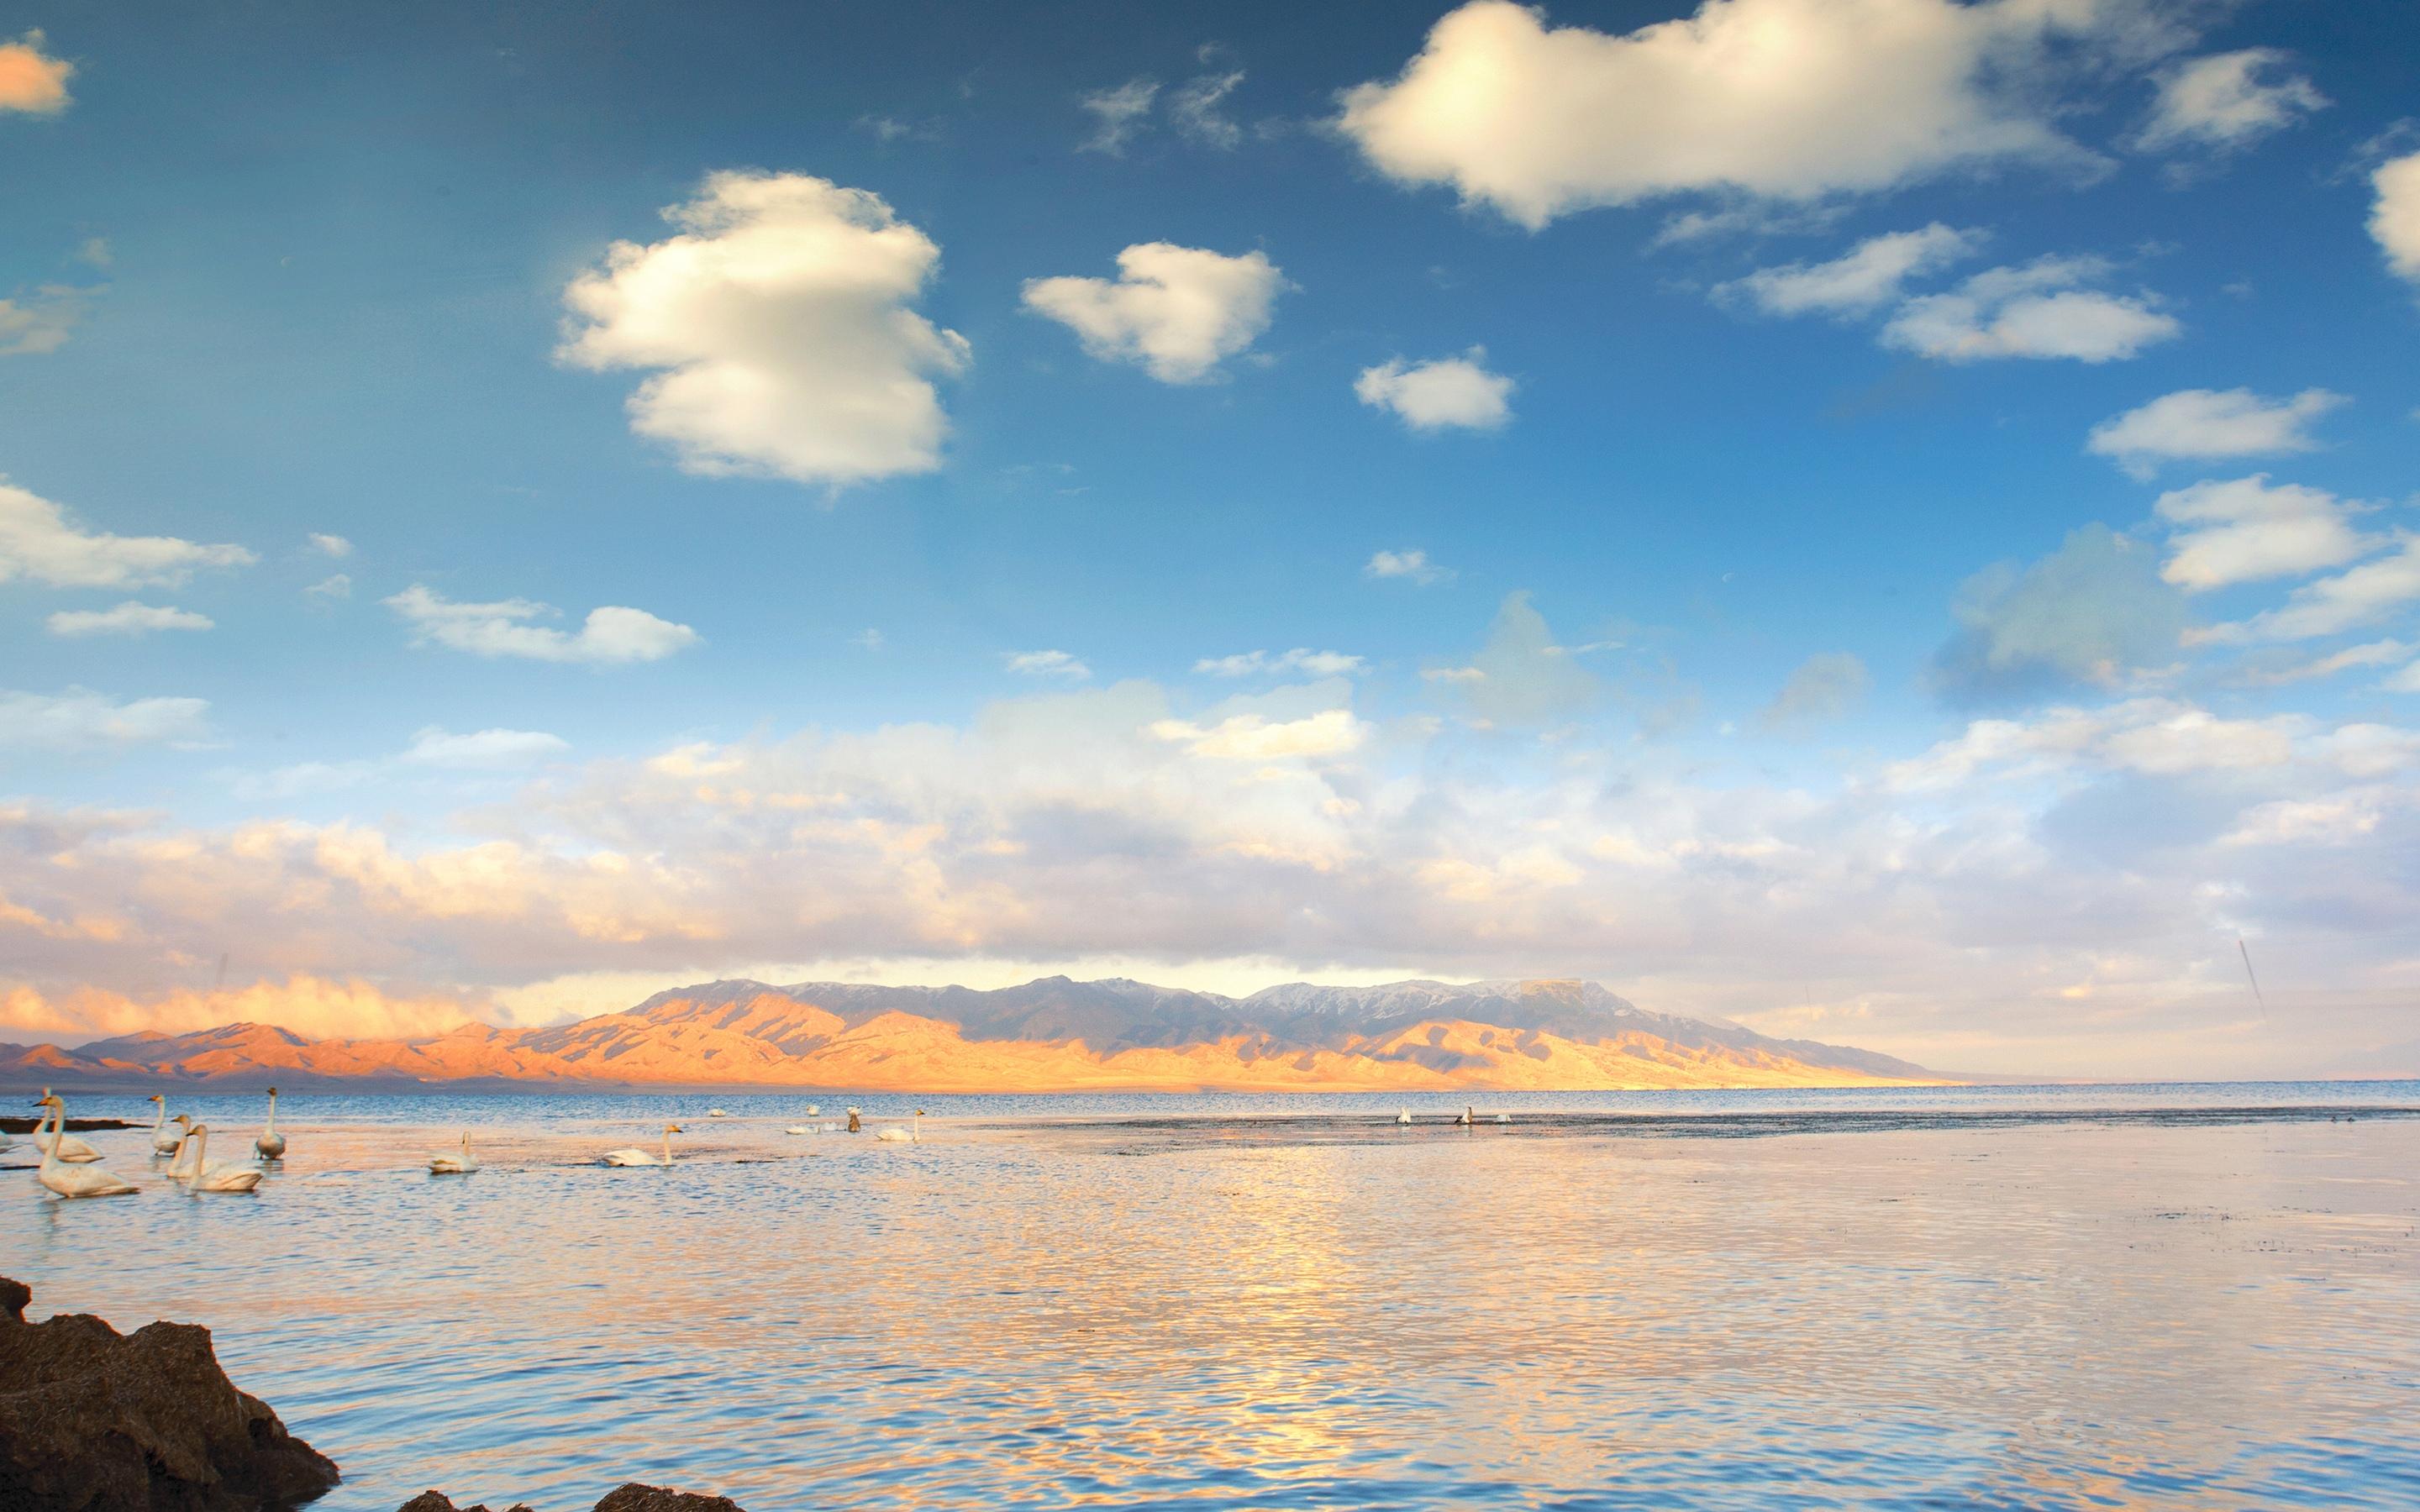 新疆赛里木湖的日出风光图片壁纸